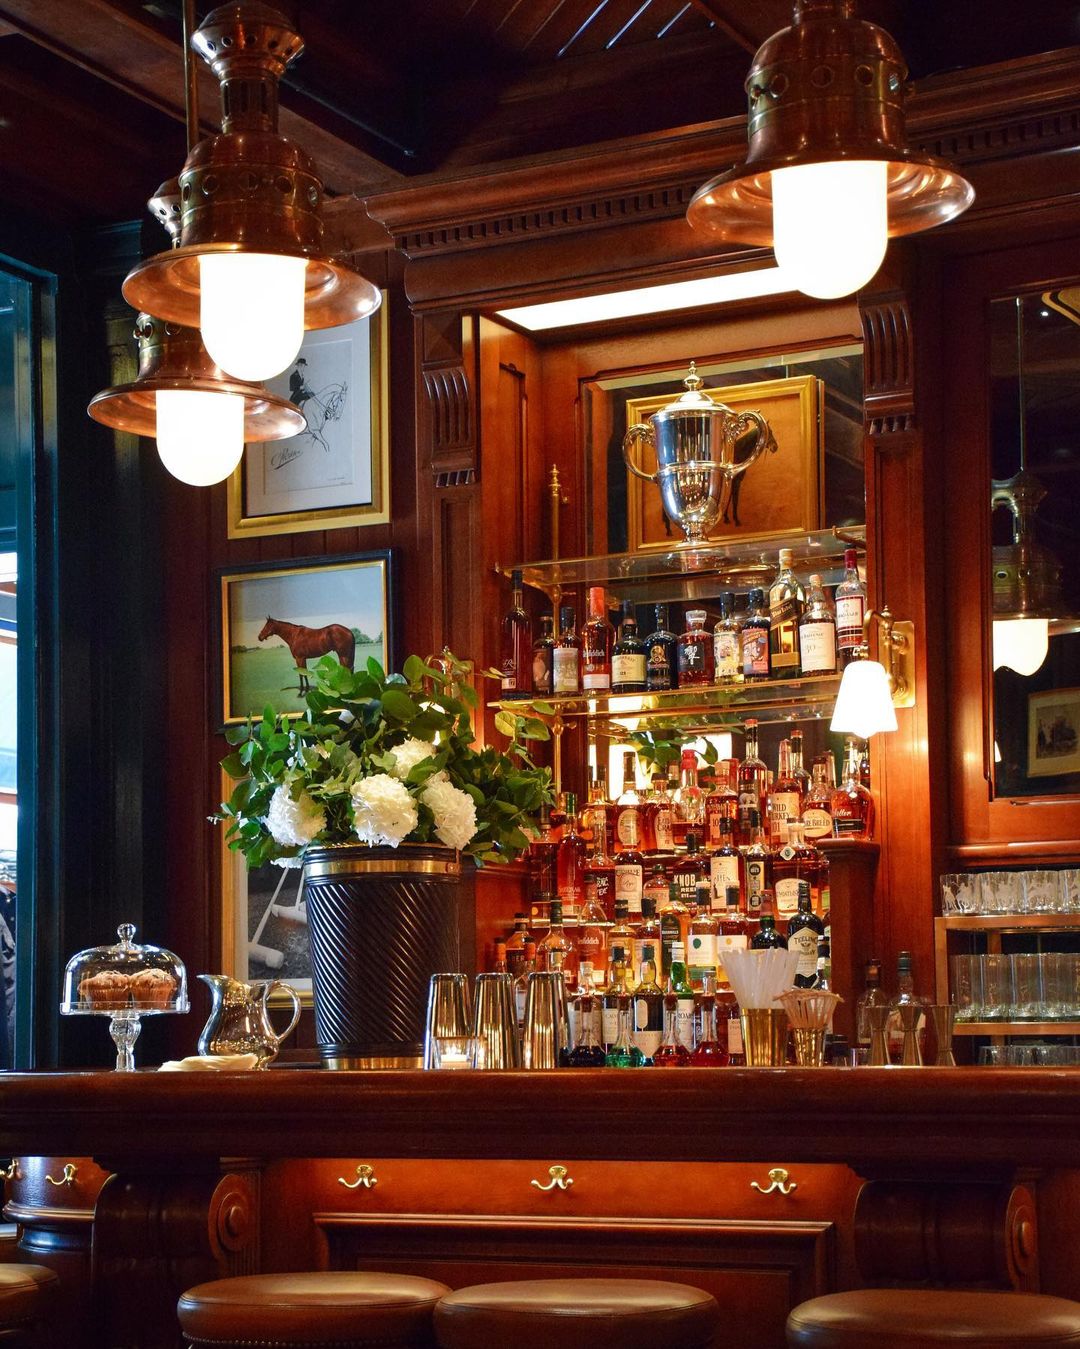 Lối trang trí của quán lấy cảm hứng từ Polo Bar ở NYC với những tác phẩm nghệ thuật và đồ lưu niệm. Ralph’s Coffee &amp; Bar cung cấp nhiều loại cà phê, cocktail, đồ ăn nhẹ tại quầy bar và một số món ăn truyền thống của Mỹ. Ảnh: @mrharrisonsr.